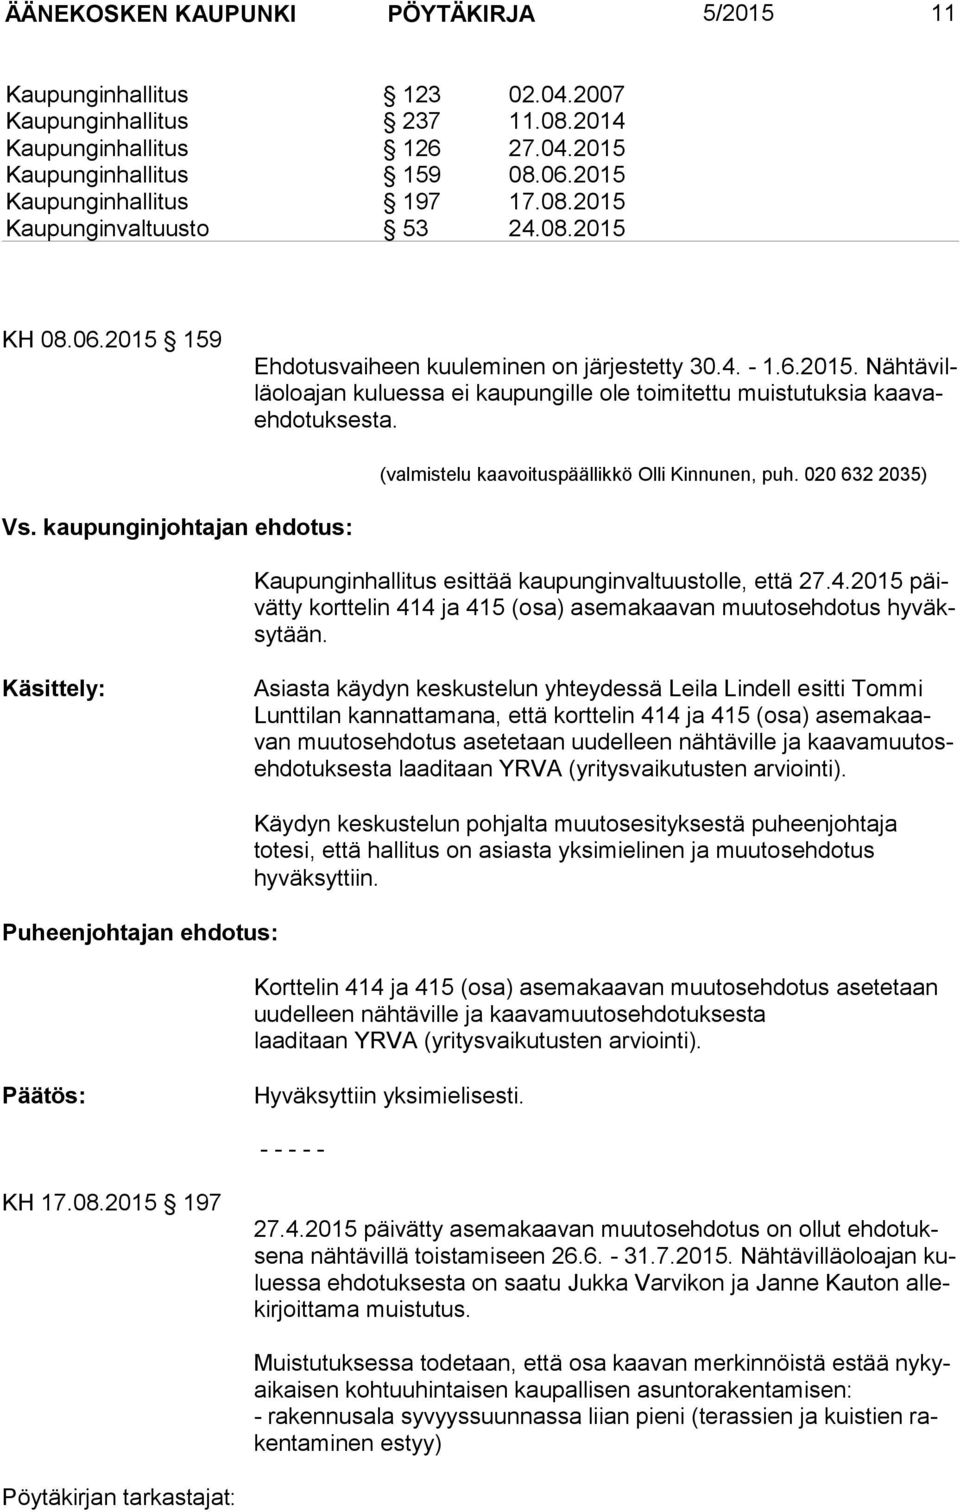 (valmistelu kaavoituspäällikkö Olli Kinnunen, puh. 020 632 2035) Vs. kaupunginjohtajan ehdotus: Kaupunginhallitus esittää kaupunginvaltuustolle, että 27.4.